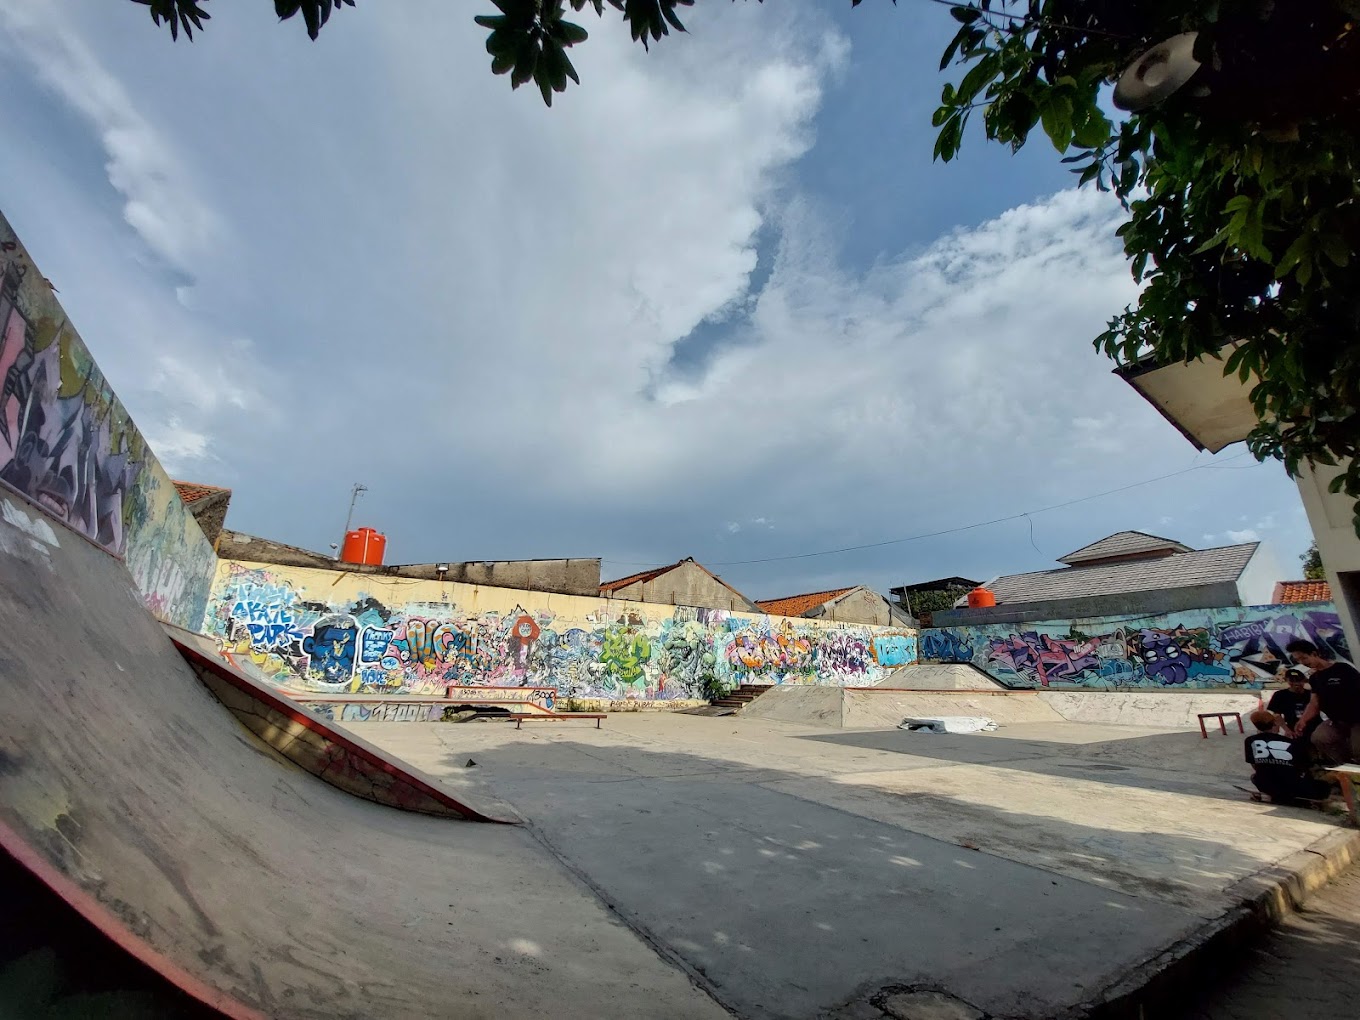 Daya Tarik Obyek wisata Tugu Skatepark di Pekayon Bekasi Jawa Barat